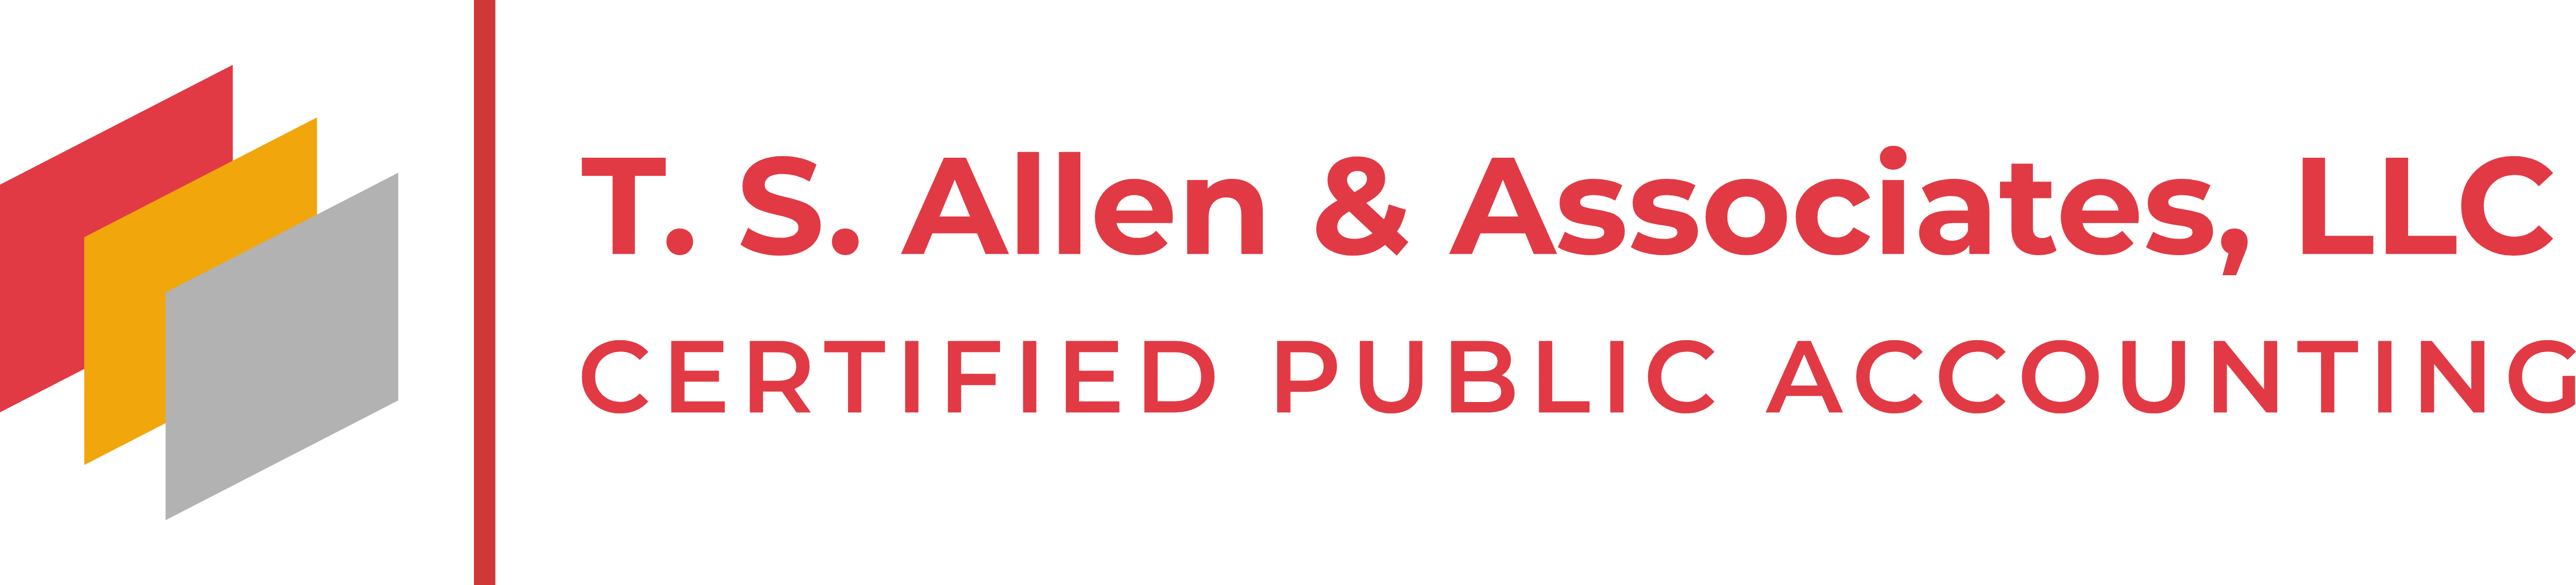 T. S. Allen & Associates, LLC Logo